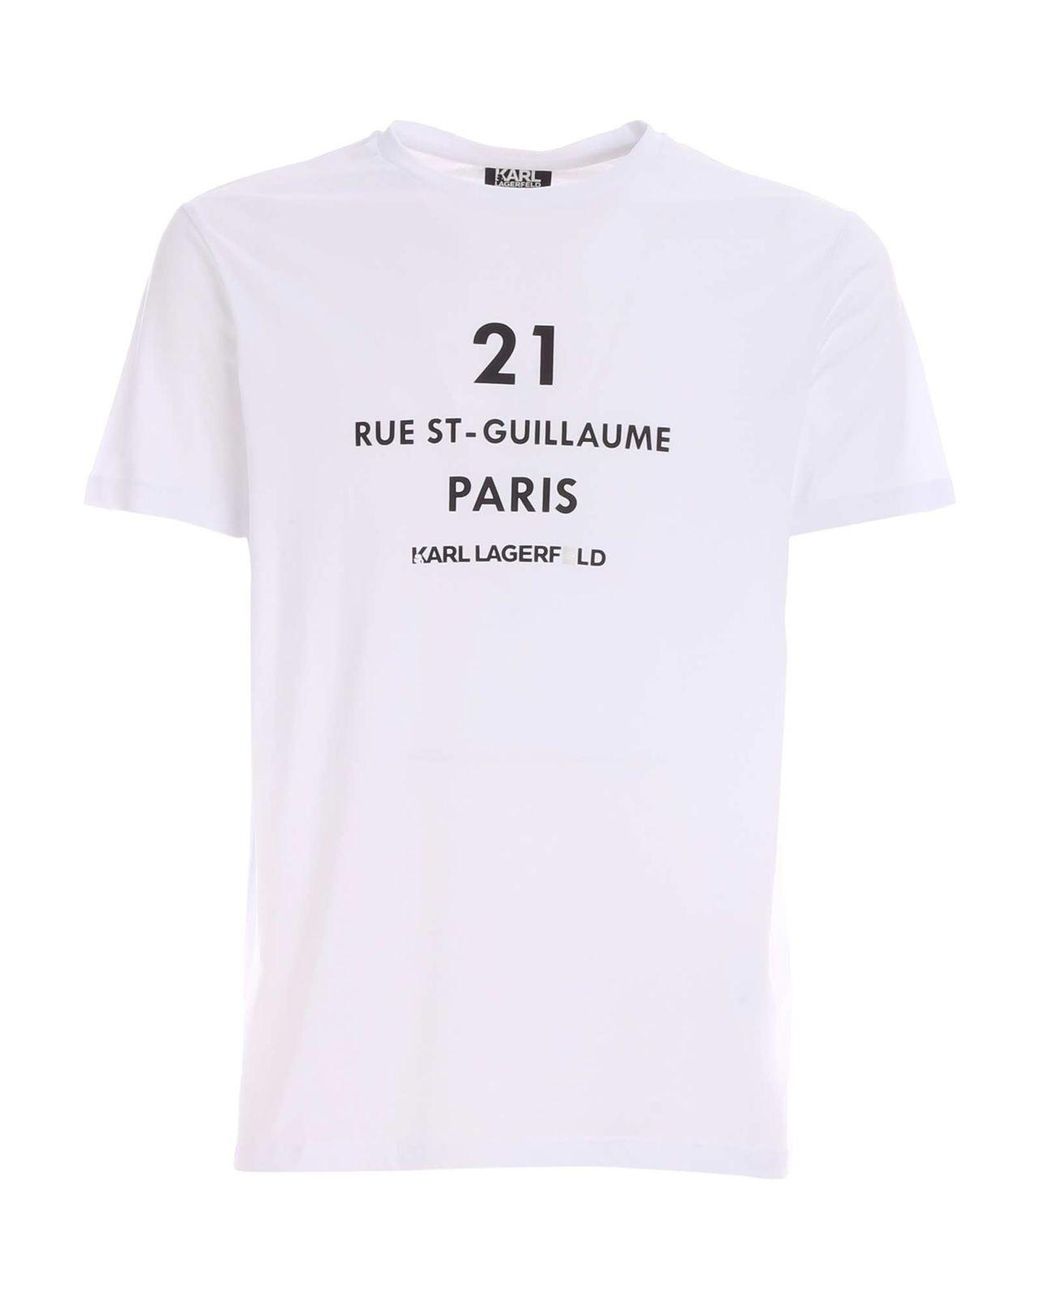 Karl Lagerfeld Cotton Rue St Guillaume T-shirt In White for Men - Lyst